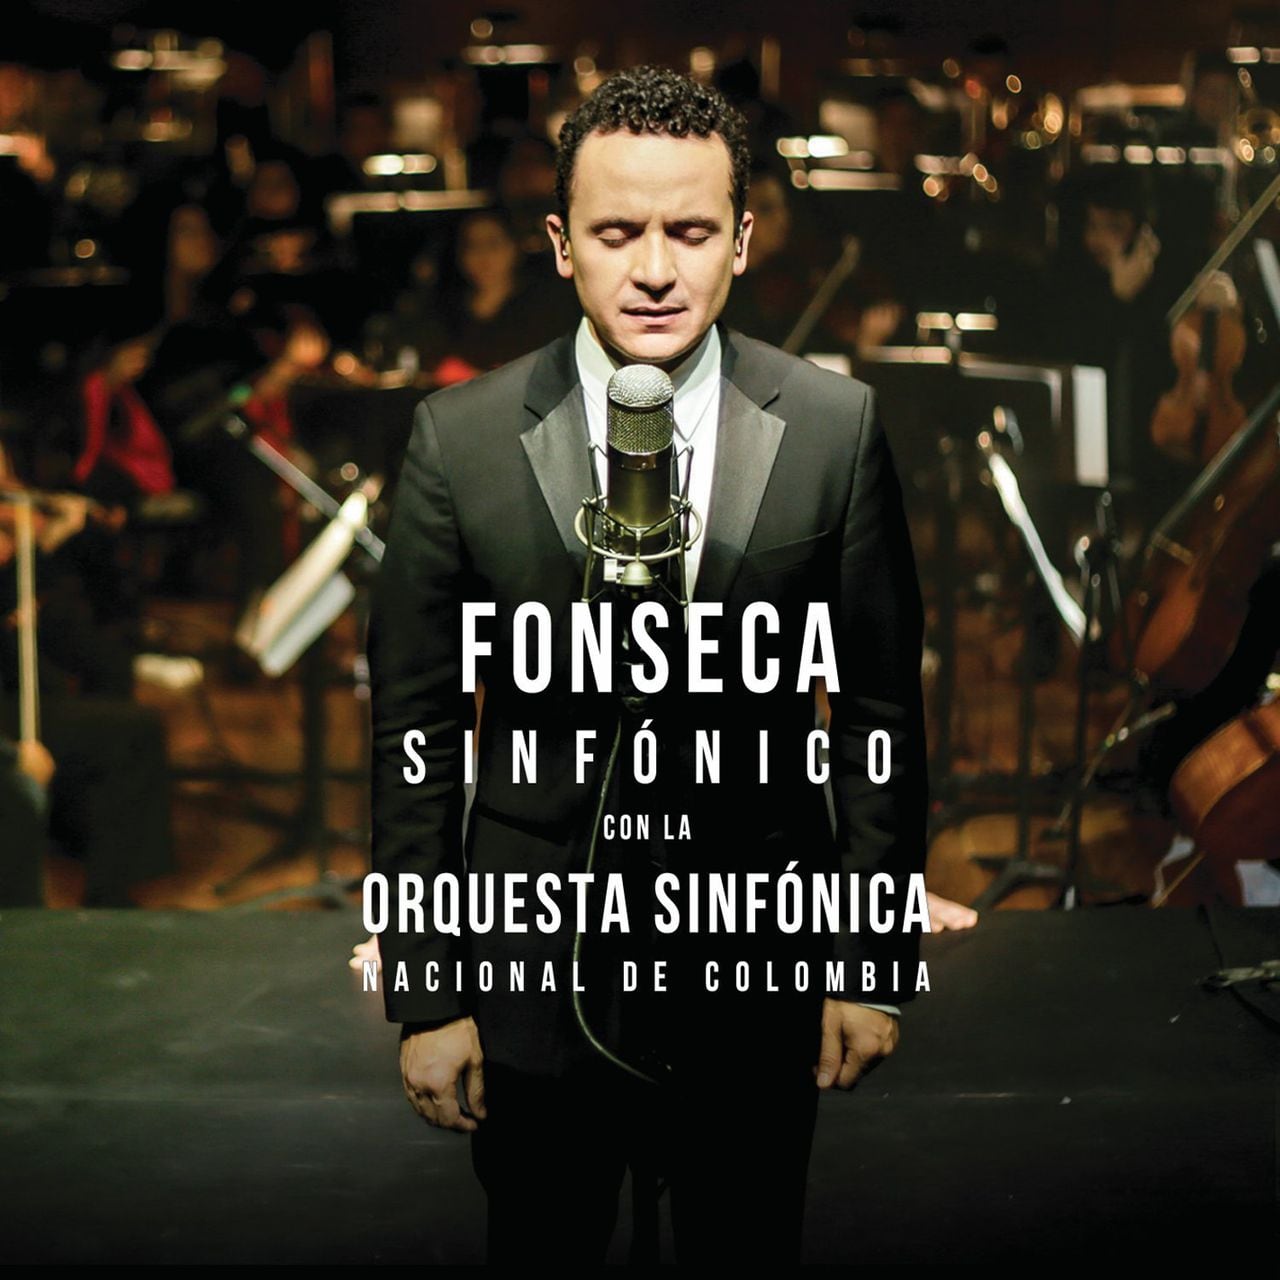 Fonseca Sinfónico, grabado con la Orquesta Sinfónica Nacional de Colombia, esta producción obtuvo un Grammy Latino a mejor álbum pop del año en 2014.